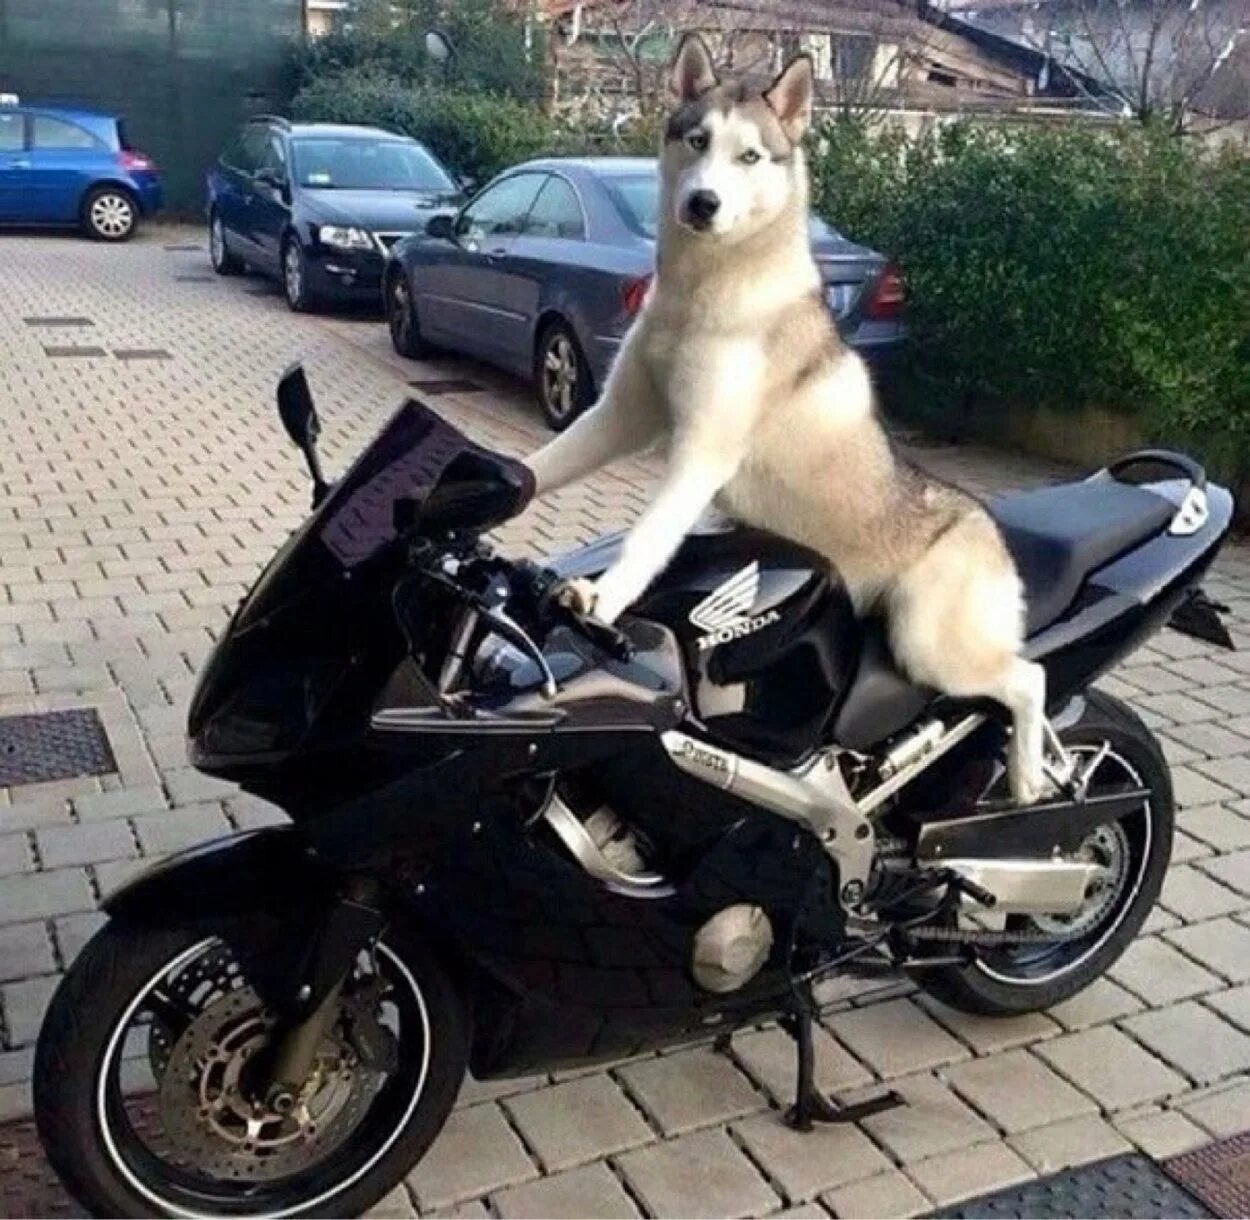 Хаски ф5. Хаски ф5 мотоцикл. Собака на мотоцикле. Смешные мотоциклы. Собака на байке.